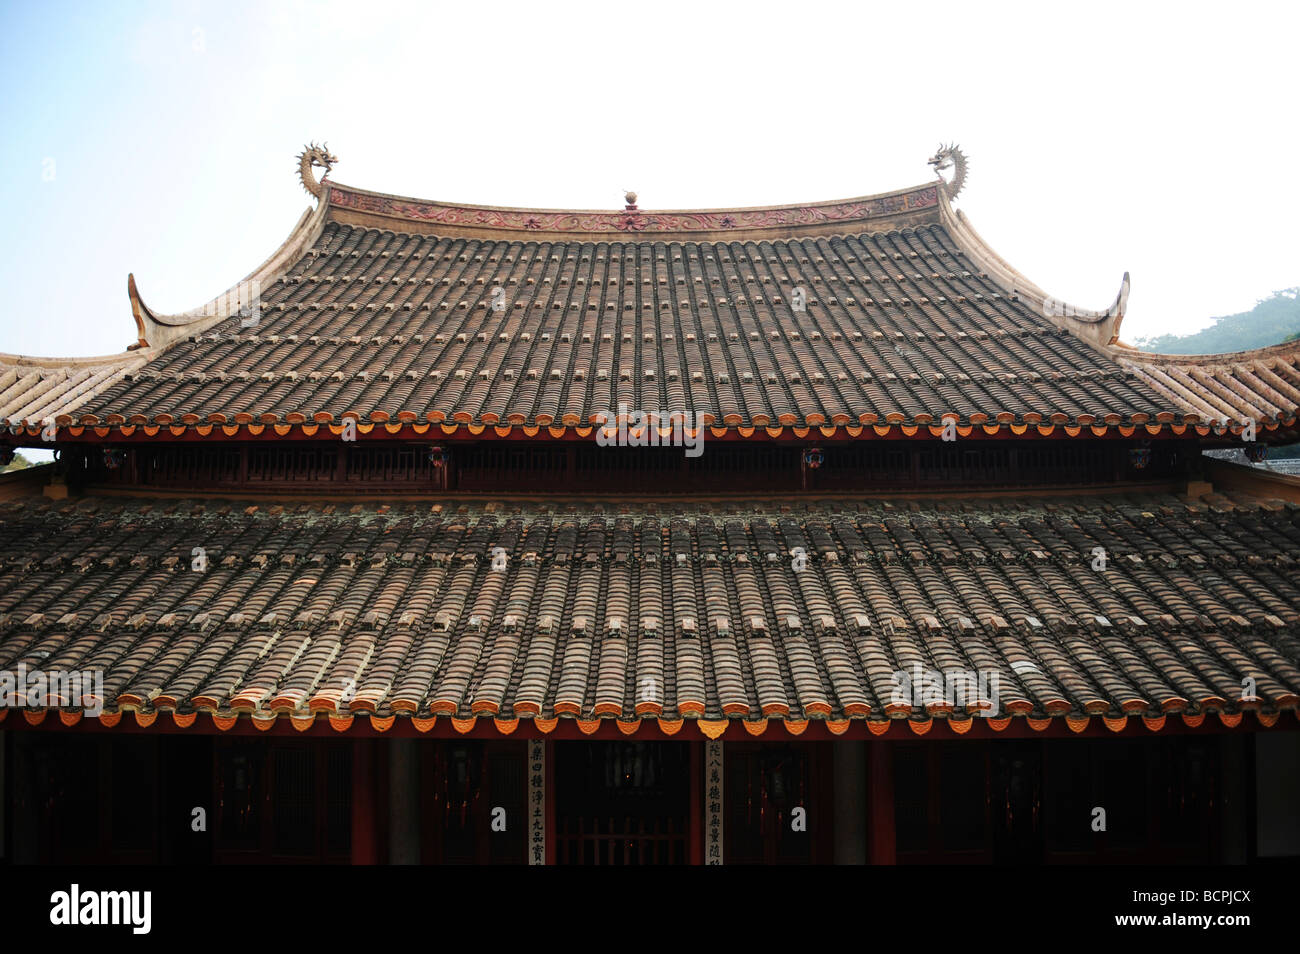 Tiled roof of The Mahavira Palace, Gushan Yongquan Temple, Fuzhou, Fujian Province, China Stock Photo